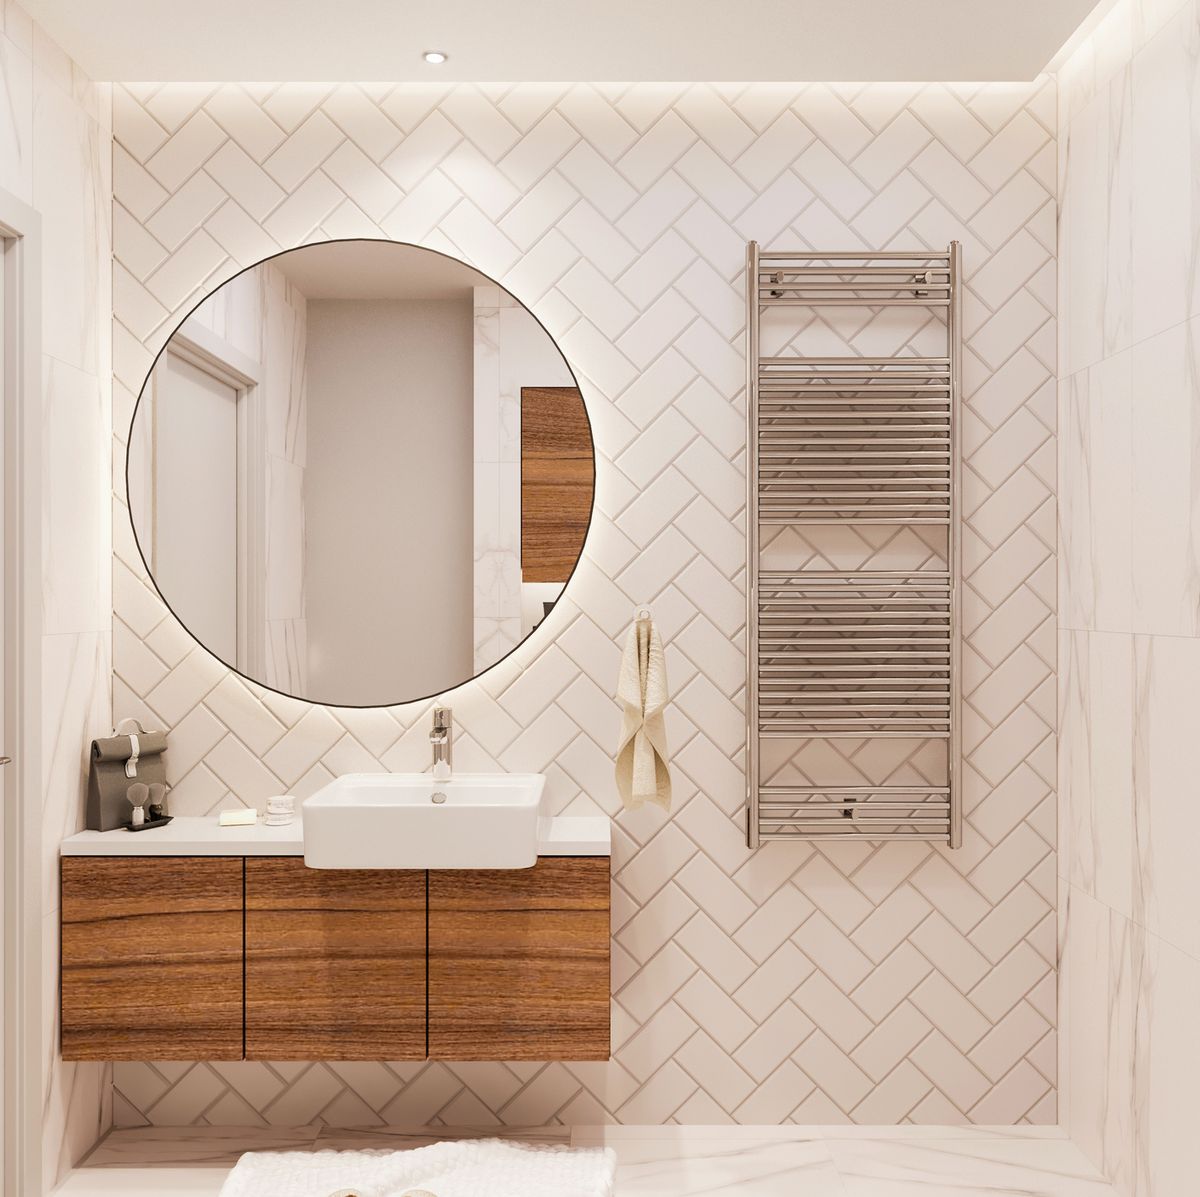 apodo Masaje Devastar 25 baños con azulejos bonitos, resistentes y originales